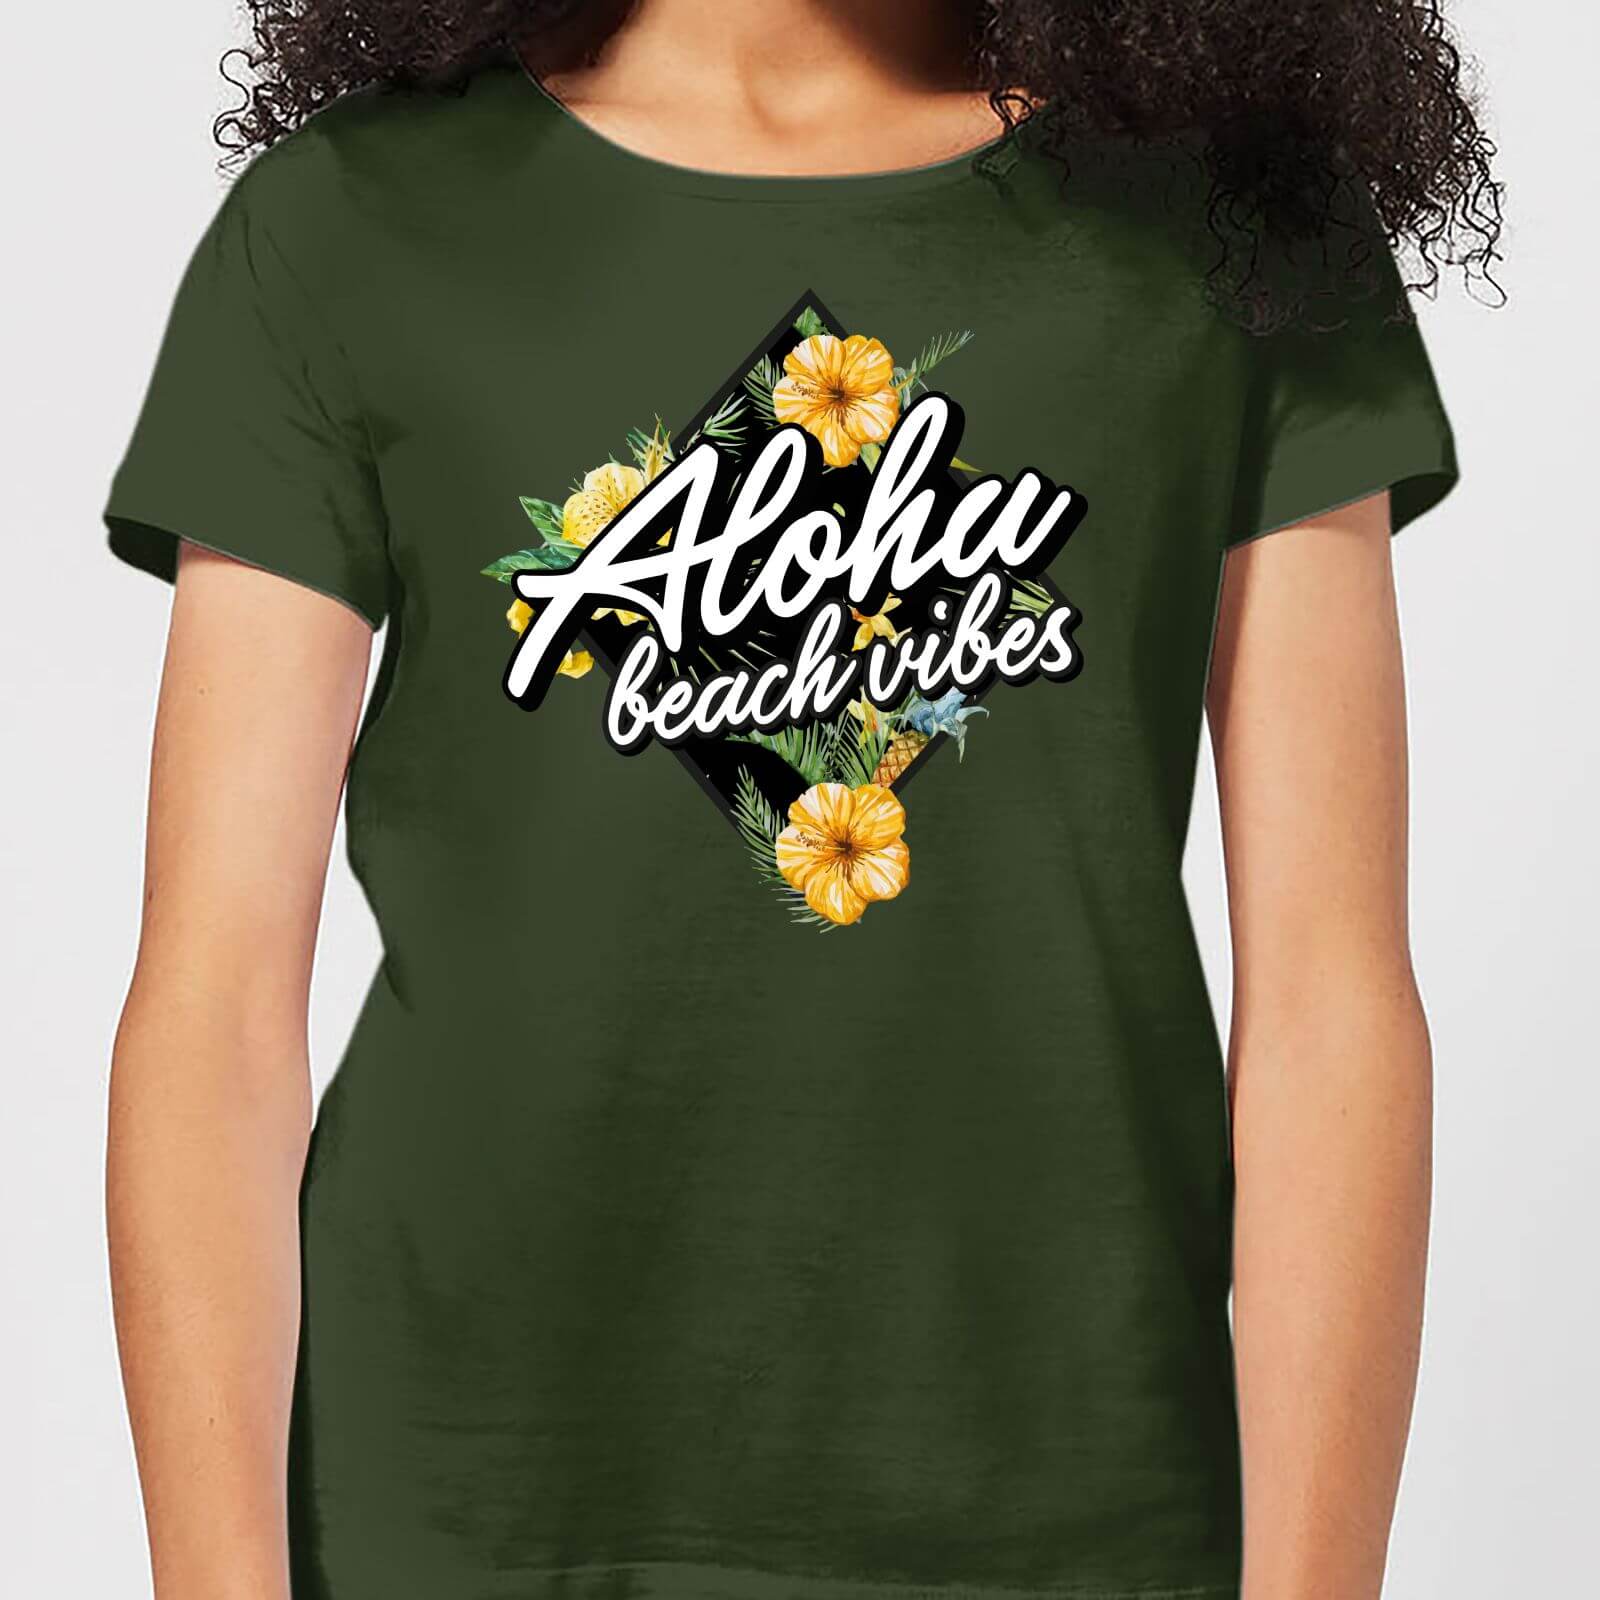 Aloha Beach Vibes Women's T-Shirt - Forest Green - S - Forest Green